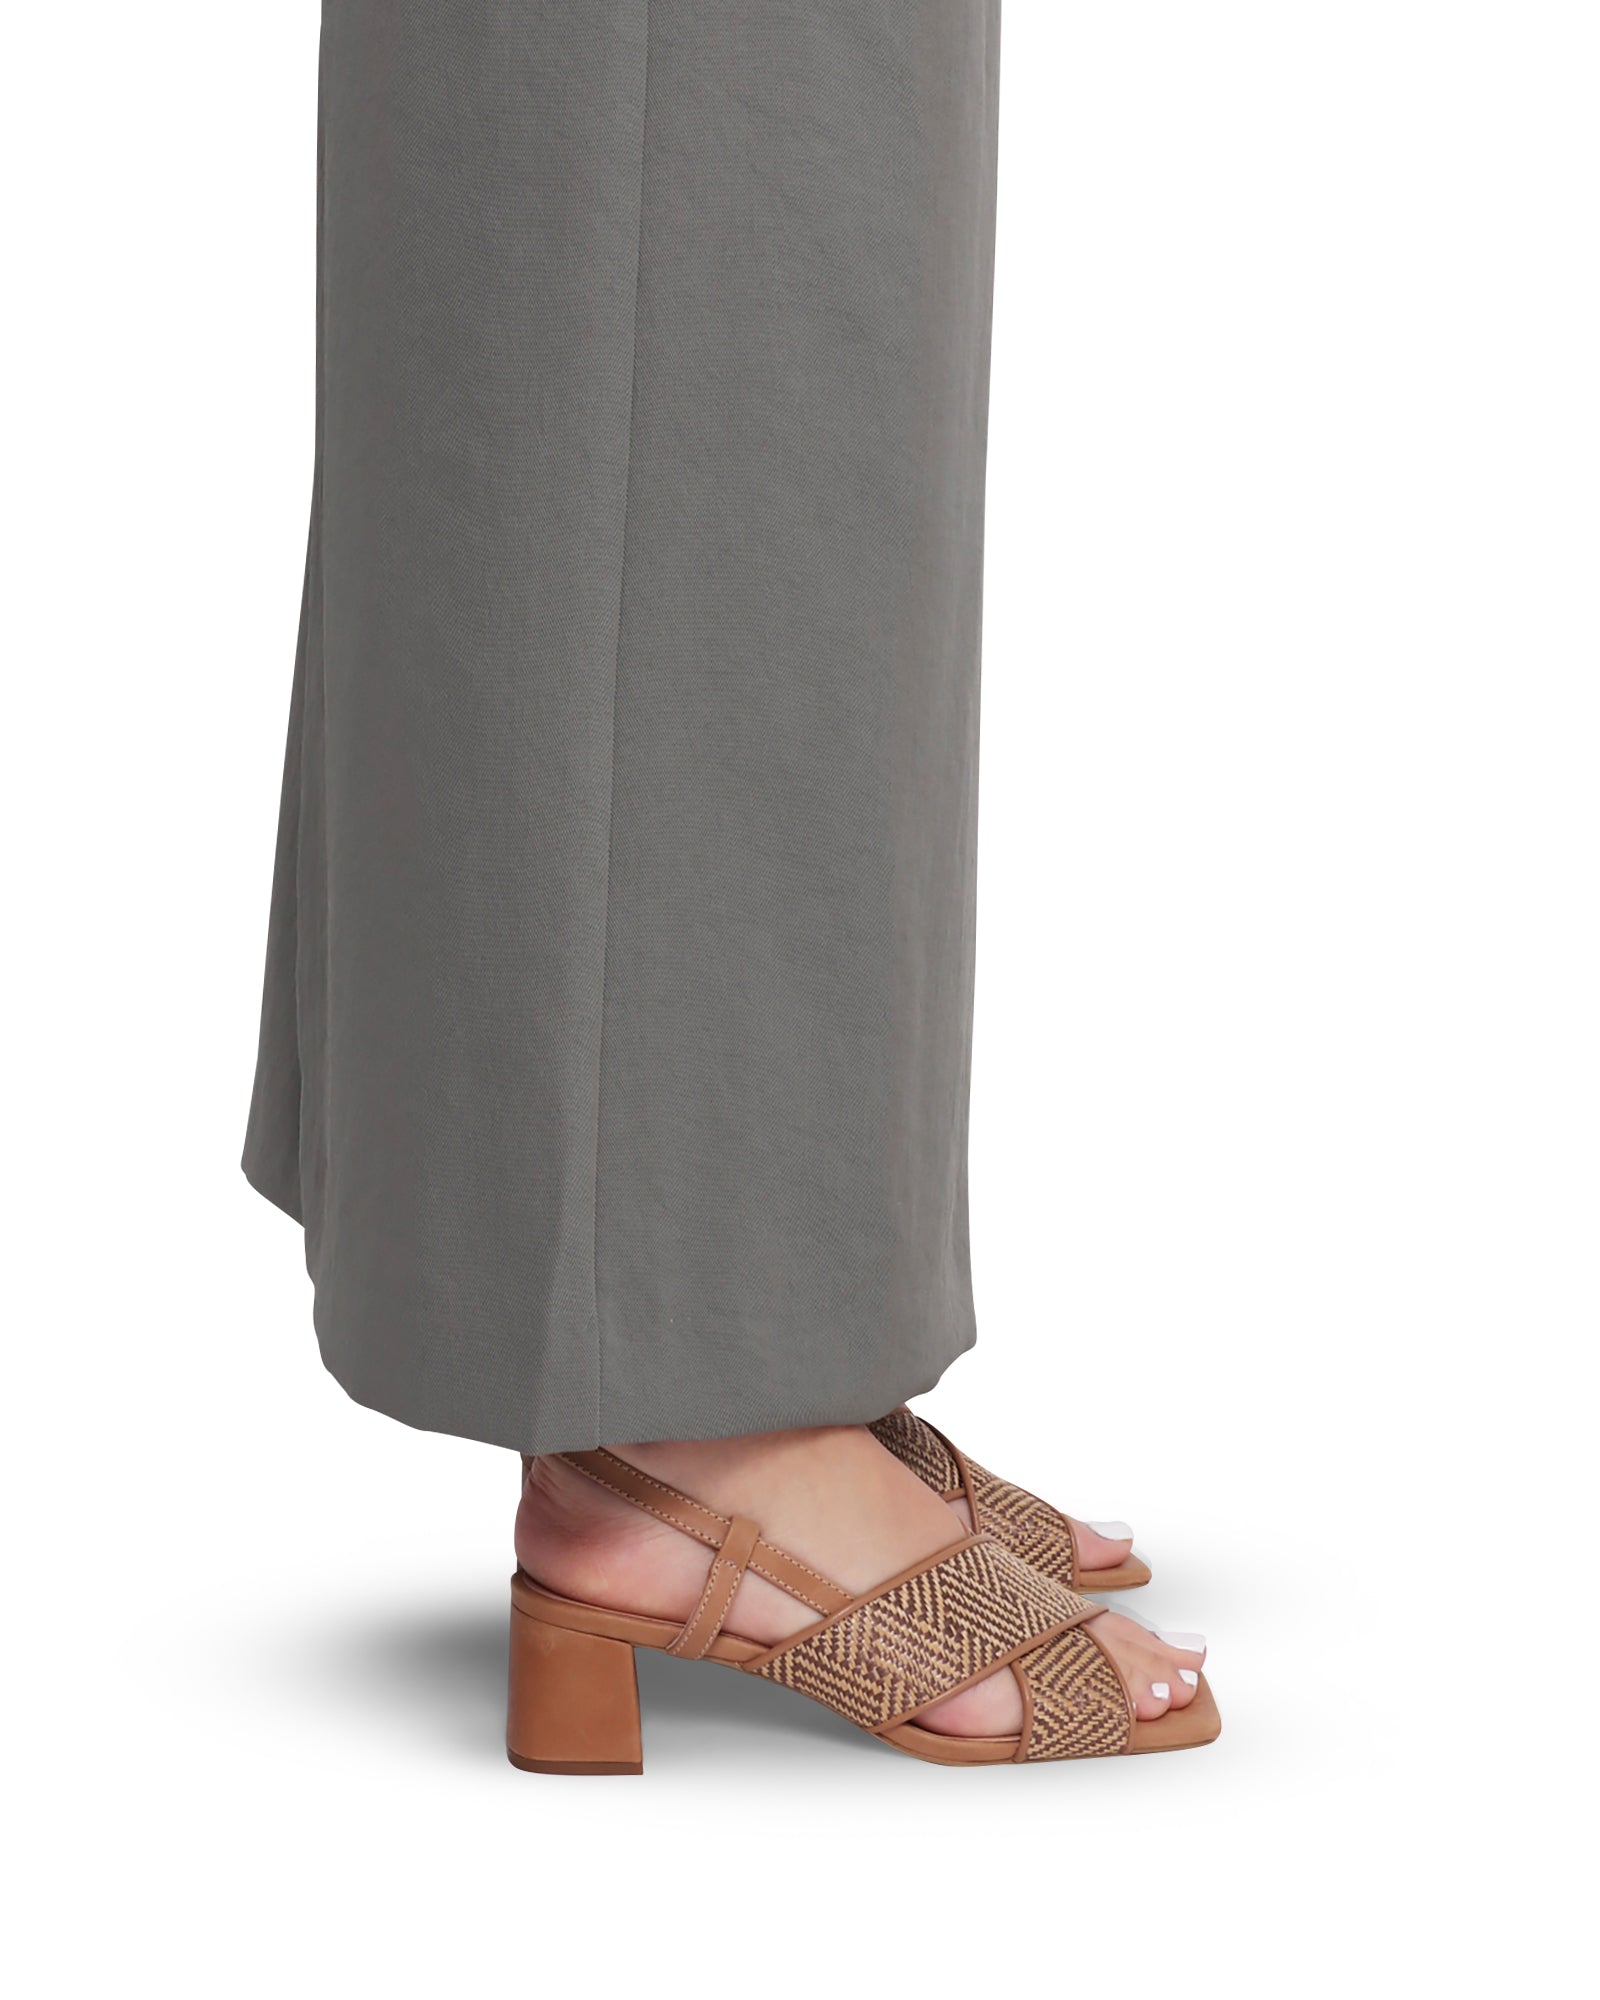 April Tan 5cm Short Heel